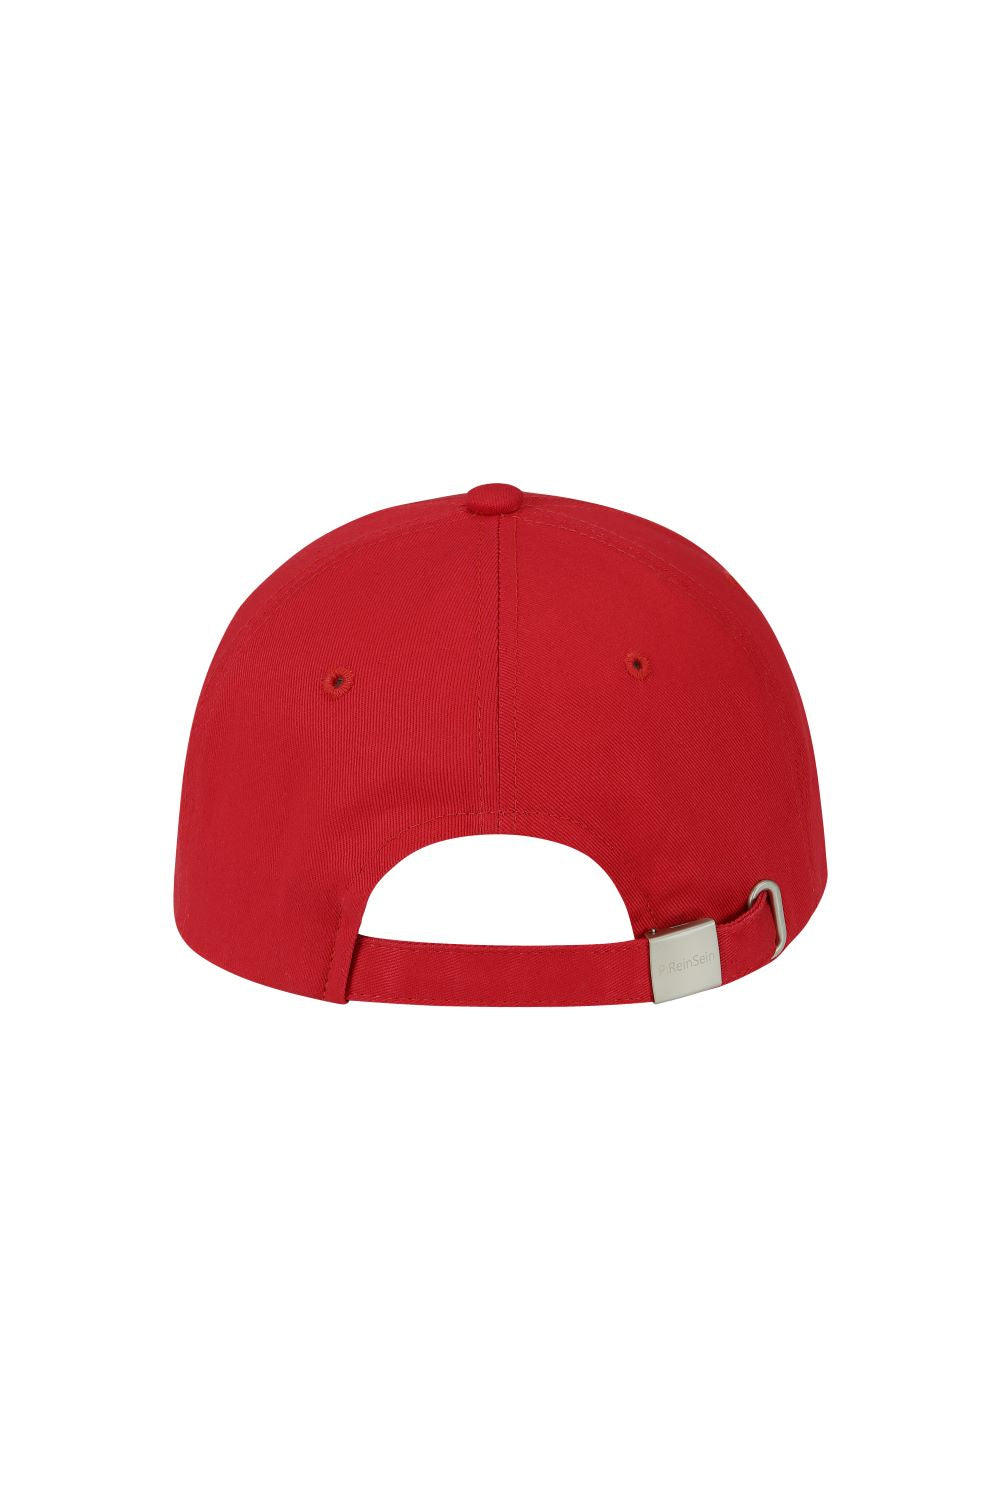 PRS red ballcap